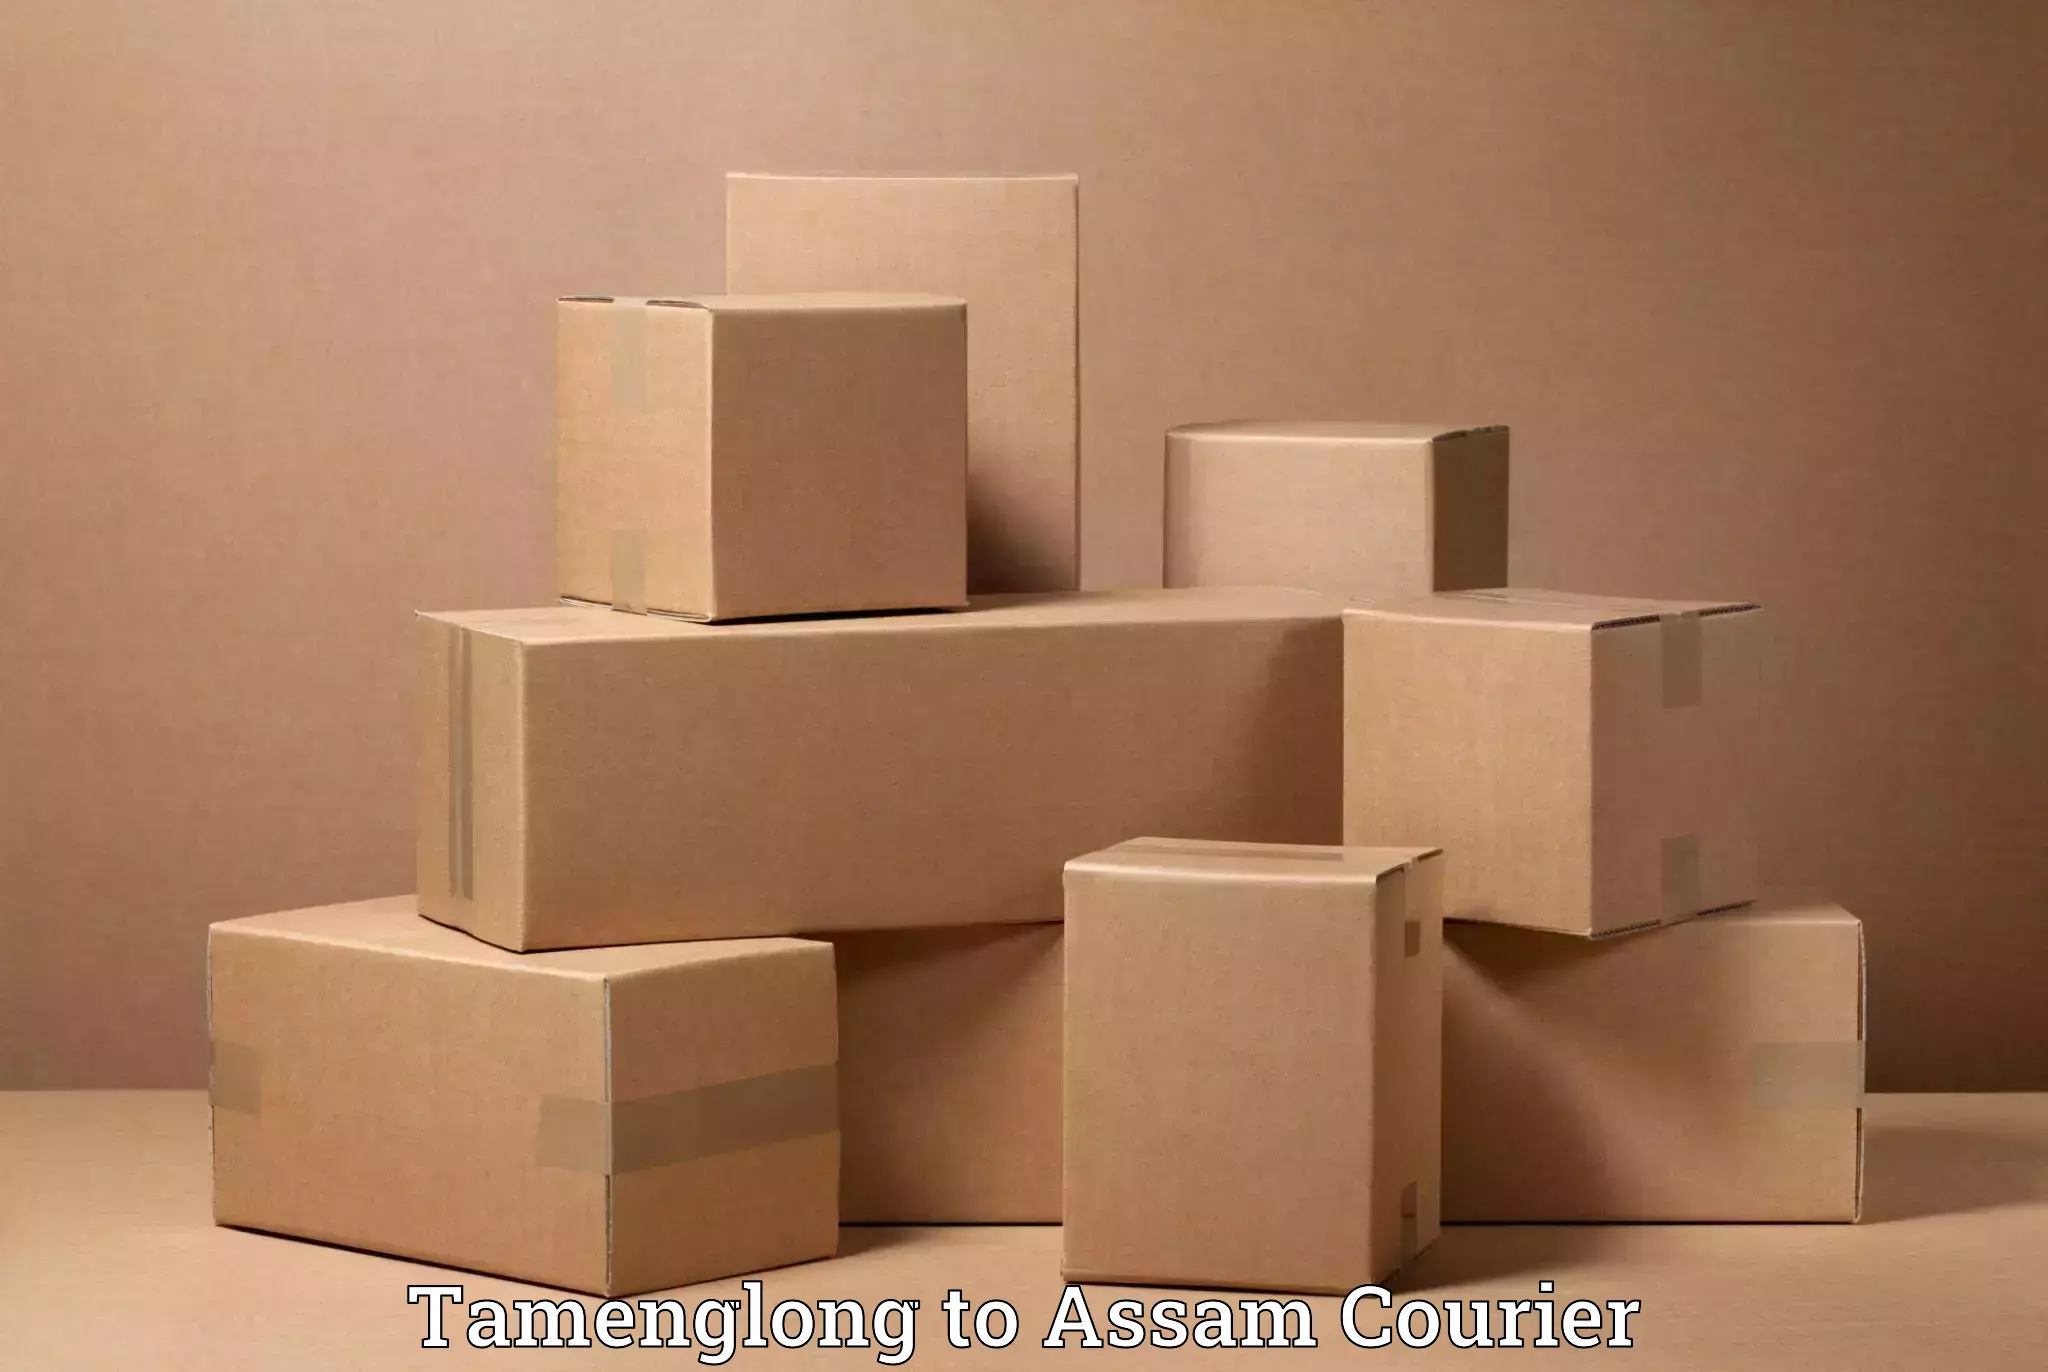 Seamless moving process Tamenglong to Kalain